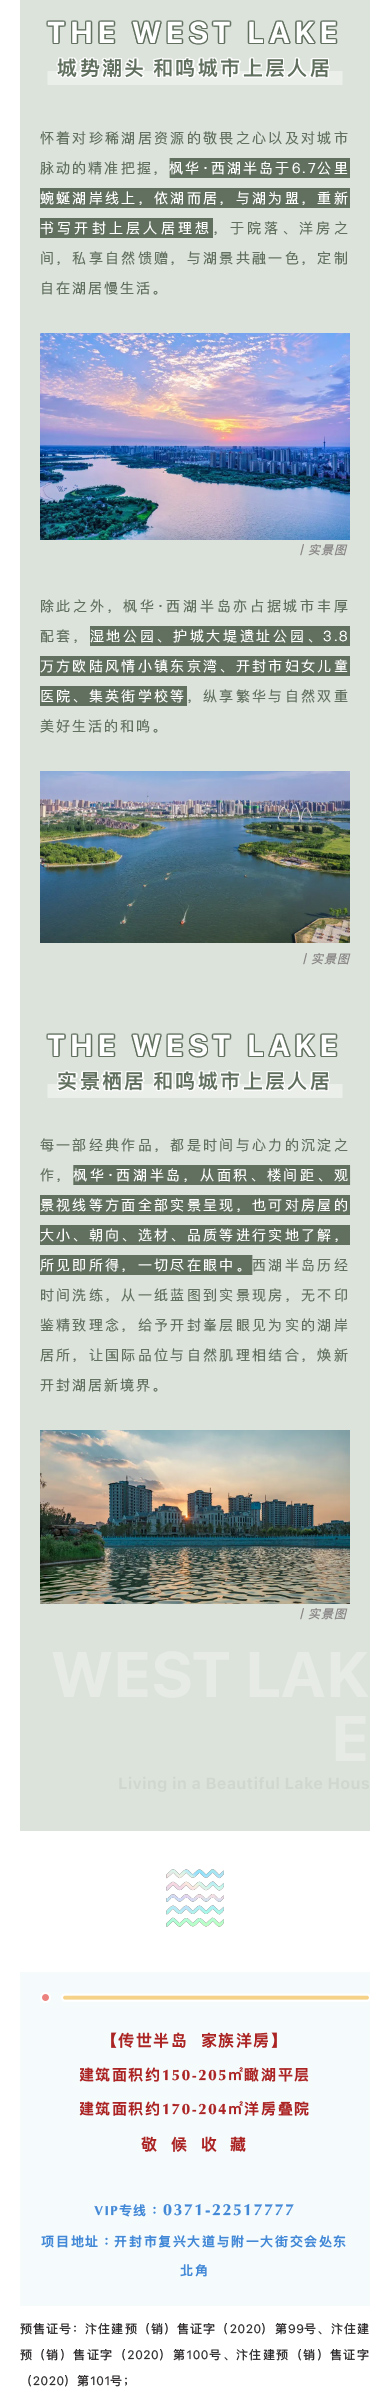 西湖半岛  以湖为灵感，重释开封湖居作品  (2).jpg